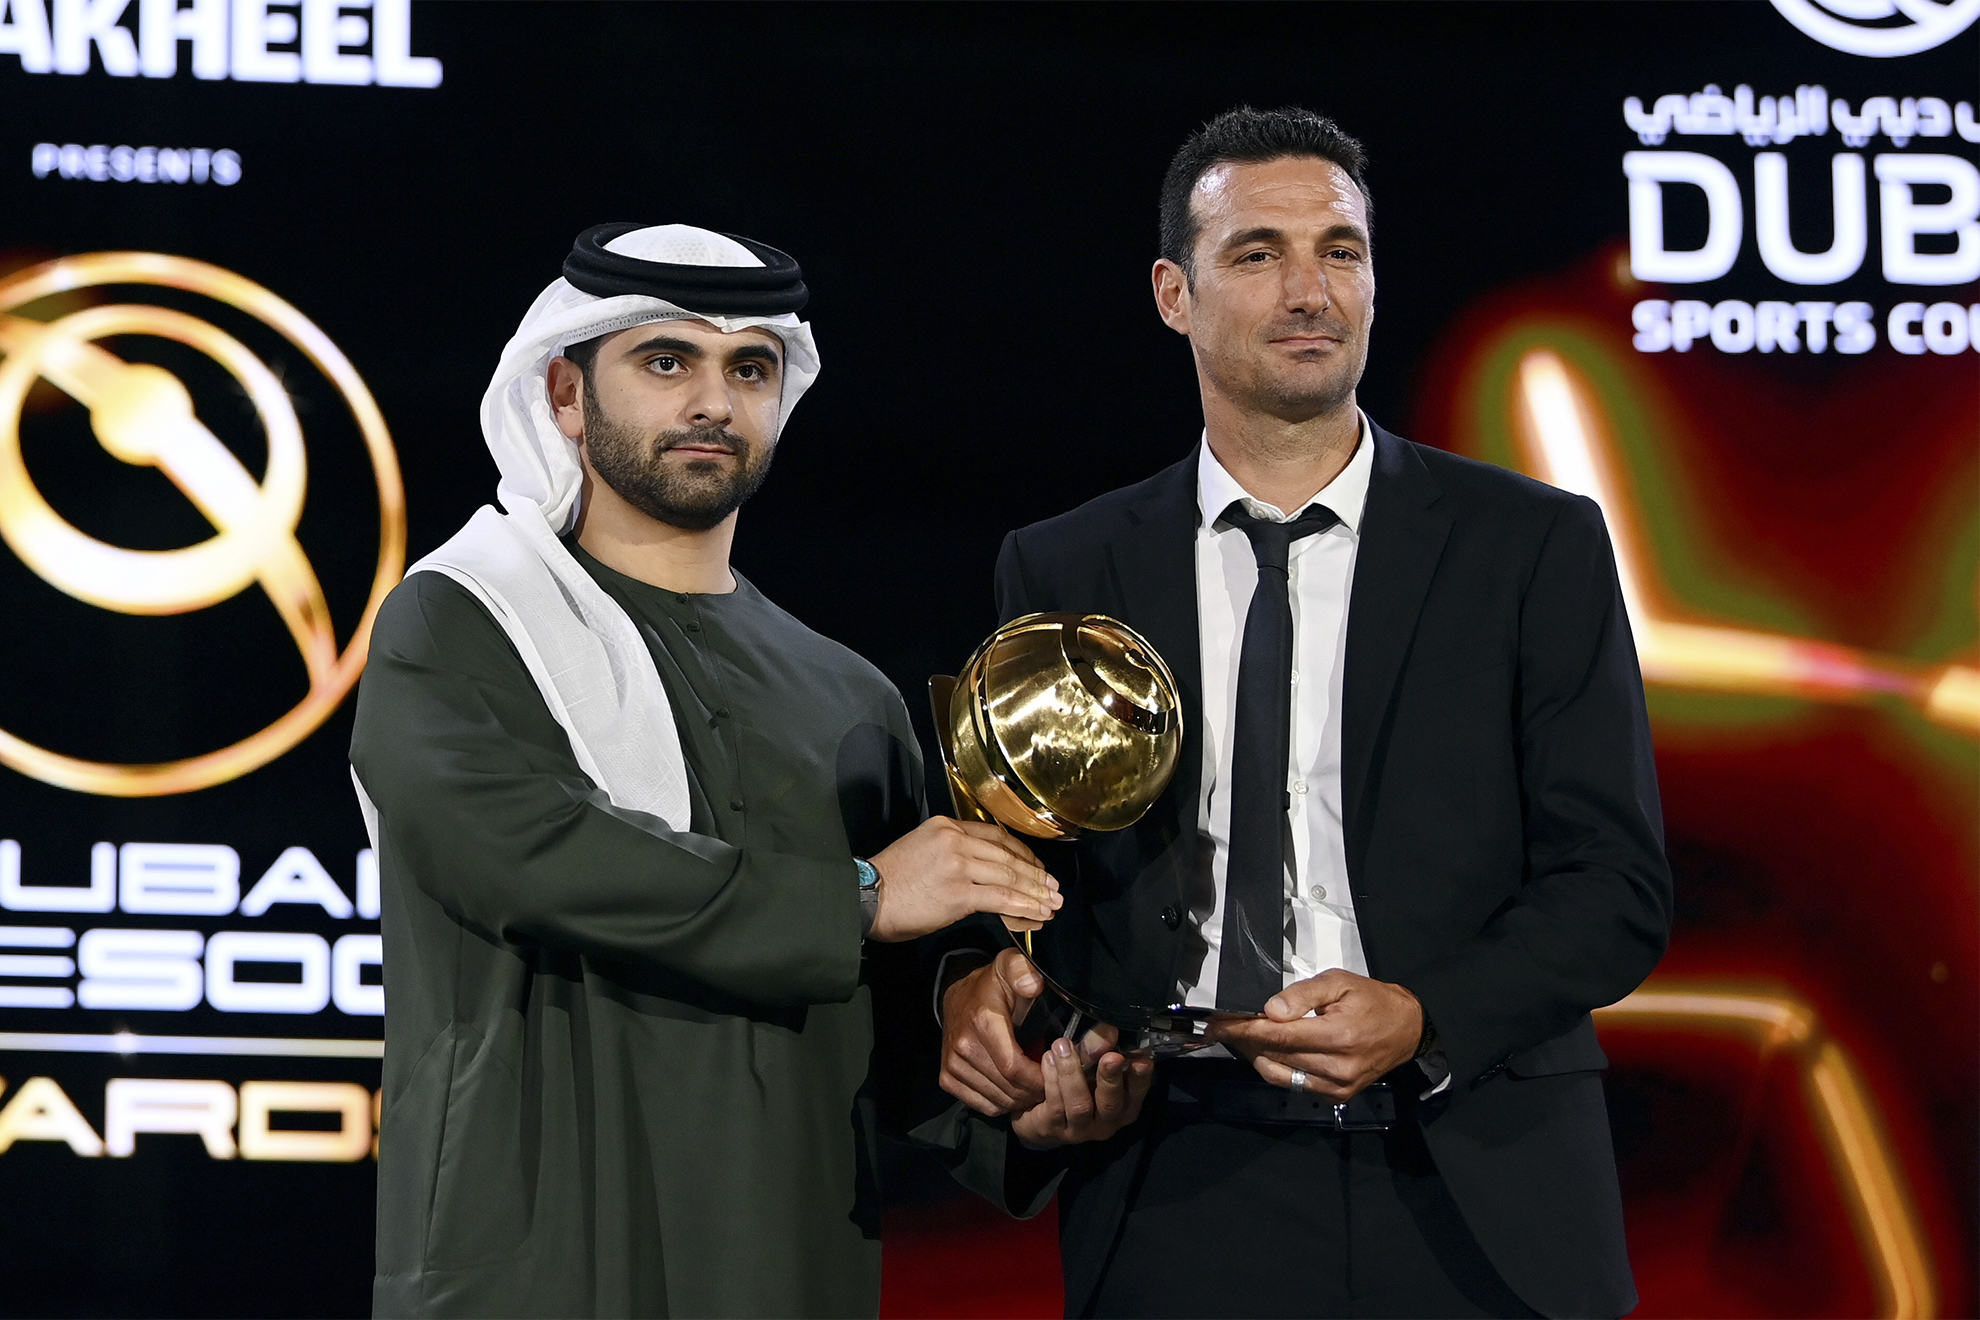 Scaloni recibe el trofeo por su carrera como entrenador en la Gala Globe Soccer en Dubai